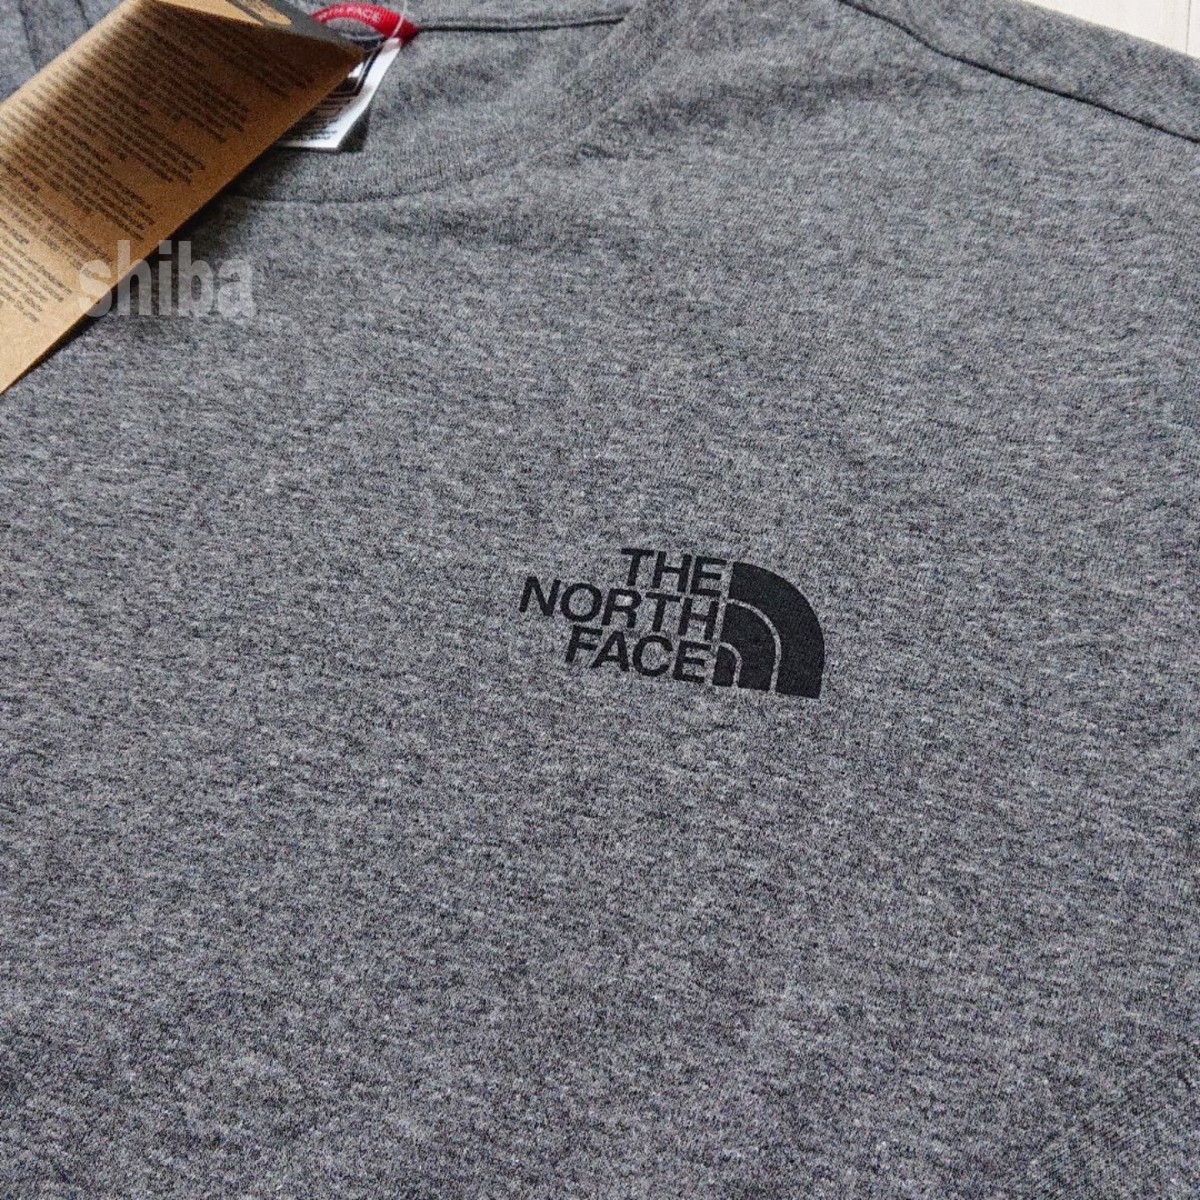 THE NORTH FACE ノースフェイス 長袖 ロンT ロング tシャツ トップス グレー 灰色 シンプルドーム 海外Sサイズ